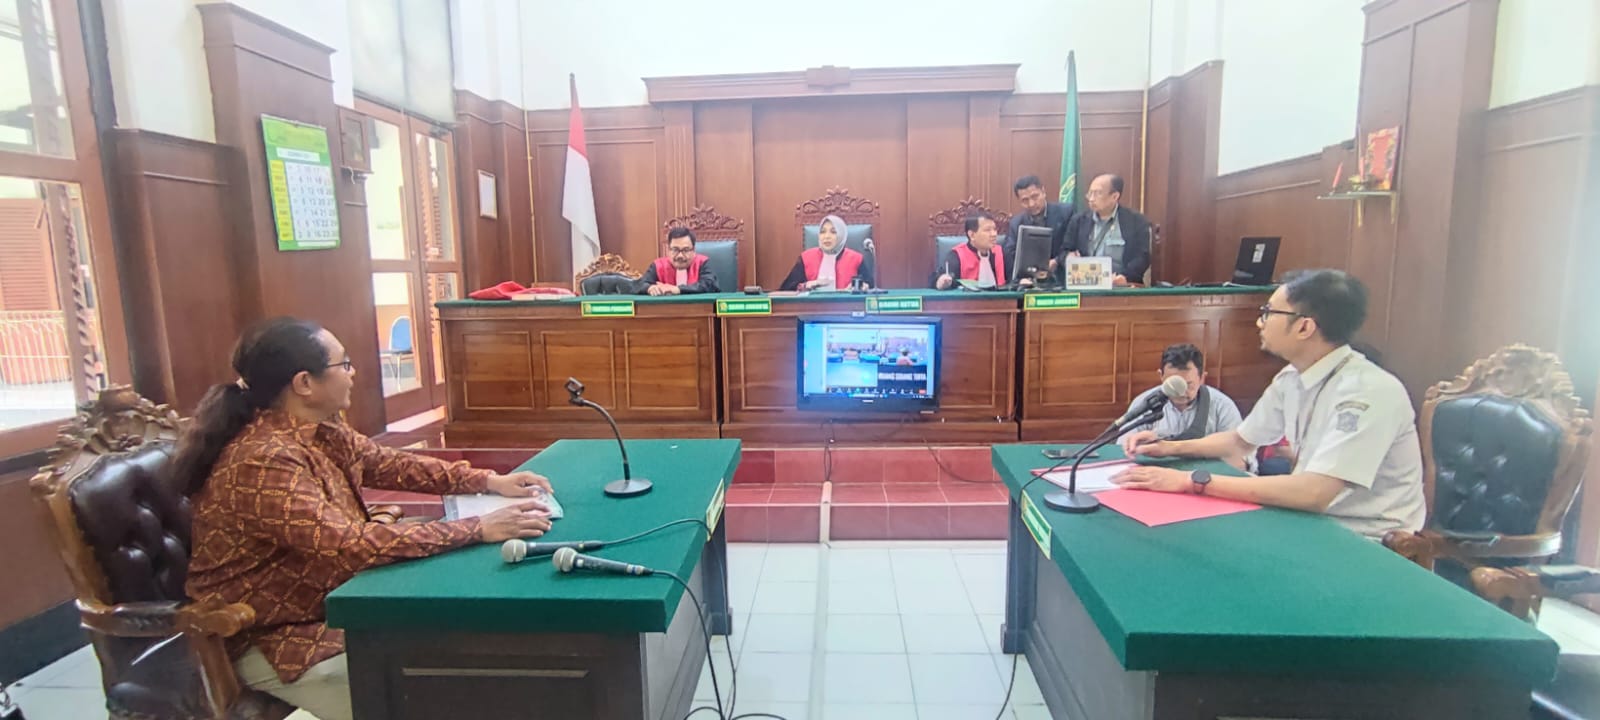 Sidang Perdana Penjual Rujak Cingur Gugat Wali Kota Surabaya Ditunda